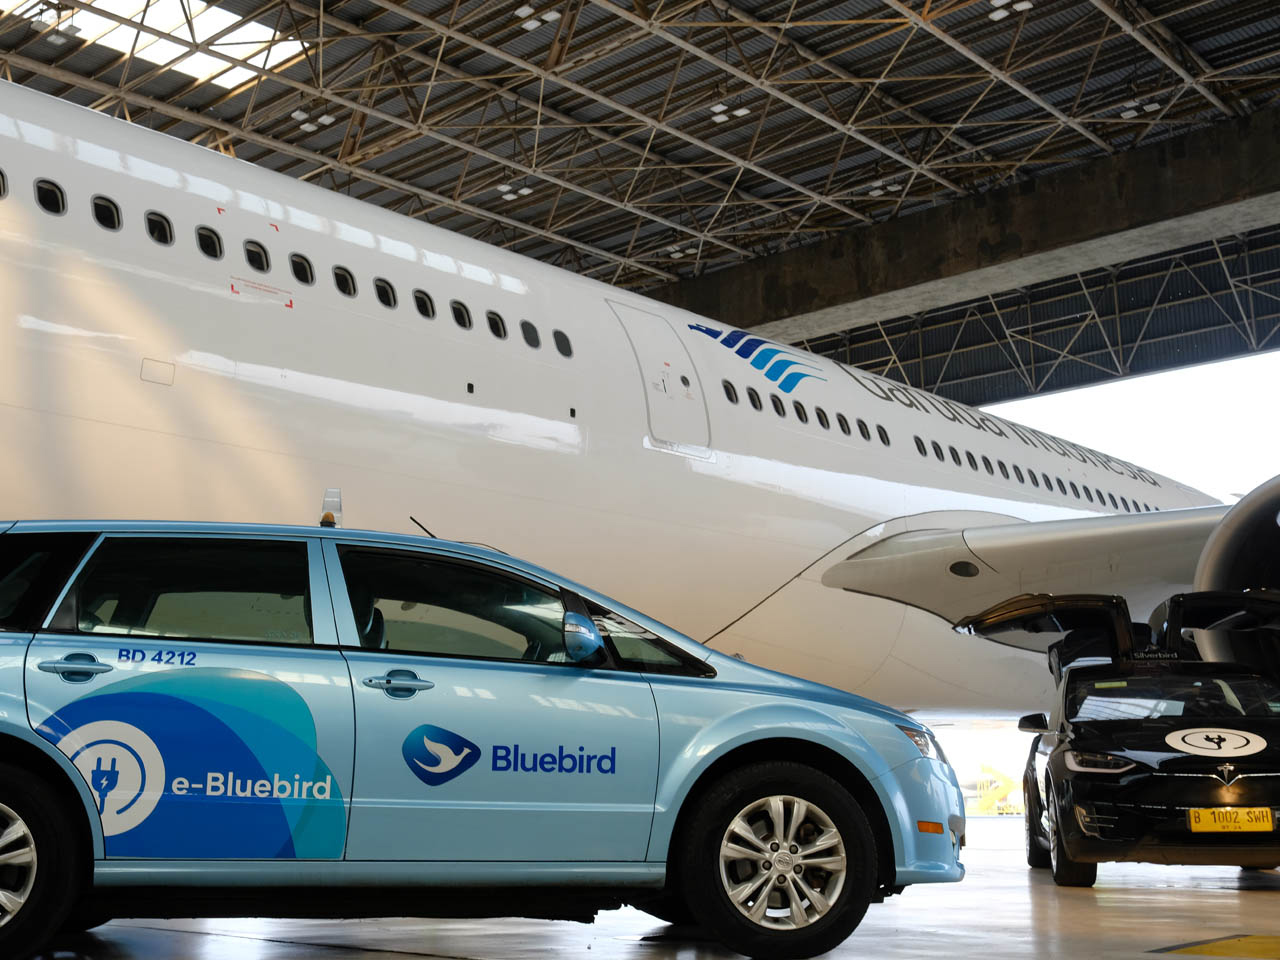 Garuda Indonesia Jalin Kemitraan dengan Bluebird Group, Hadirkan Fitur Baru Layanan Transportasi Terintegrasi Dari dan Menuju Bandara